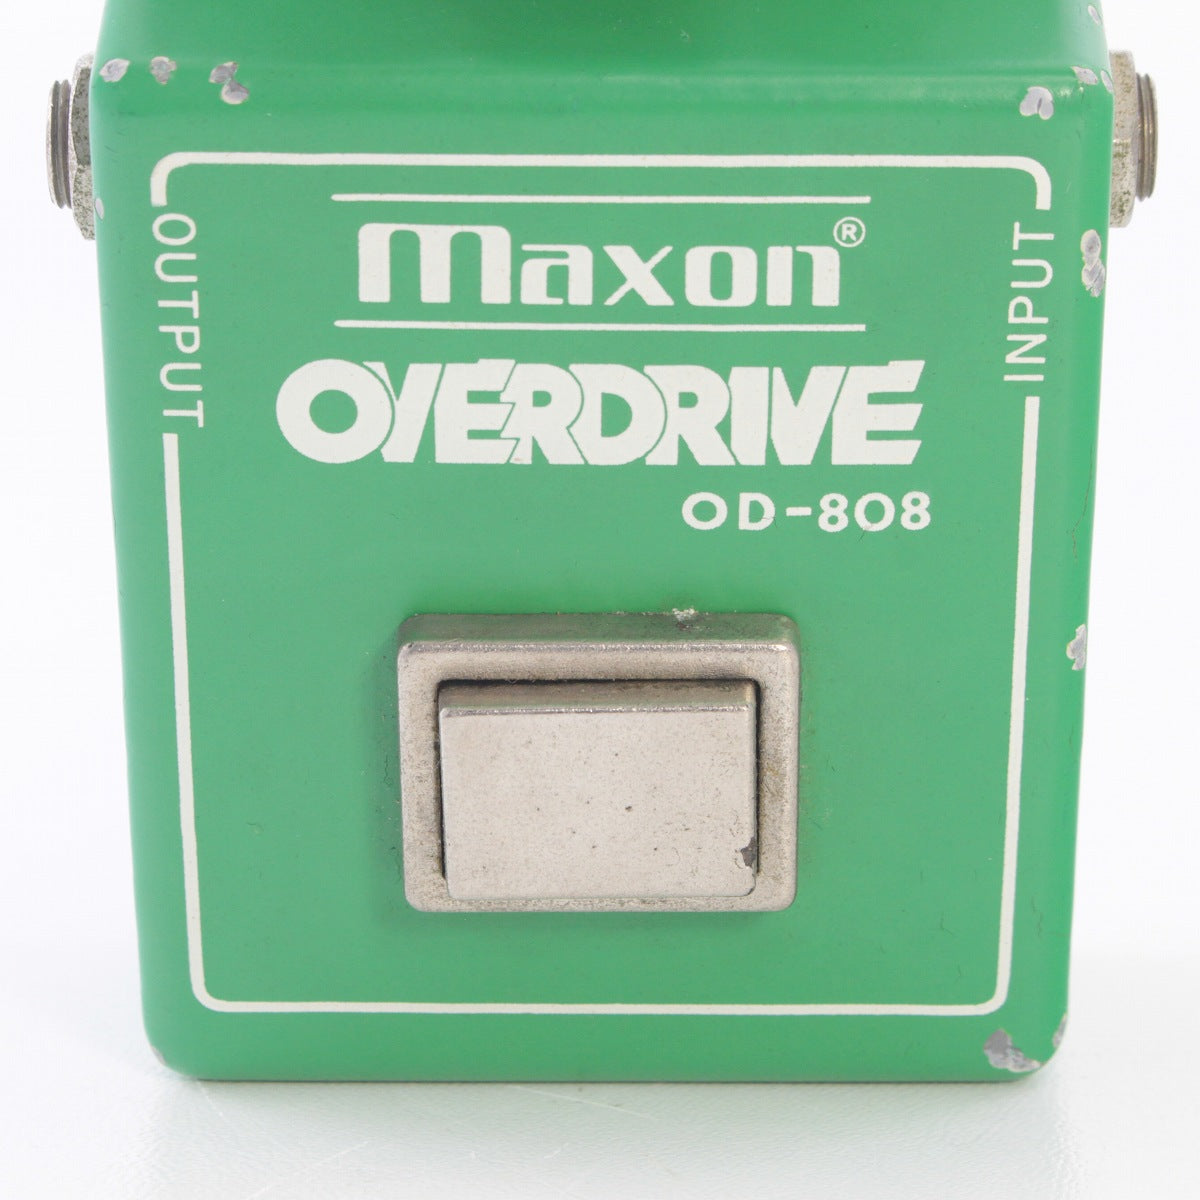 [SN 114301] USED MAXON / OD-808 Large Case RC4558P MALAYSIA [03]